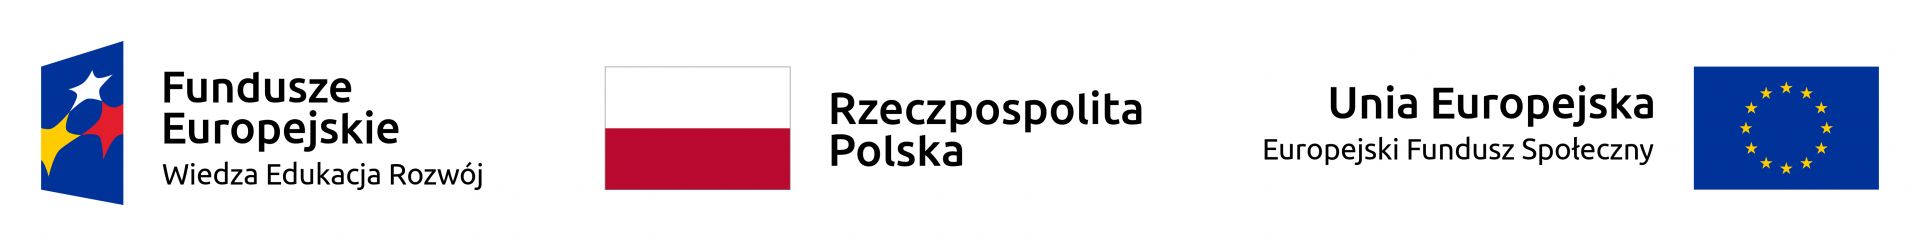 Logo Fundusze Europejskie Wiedza Edukacja Rozwój, w środu flaga Polski z podpisem Rzeczpospolita Polska oraz z prawej strony Flaga Unii Europejskiej z podpisem Unia Europejska Europejski Fundusz Społeczny